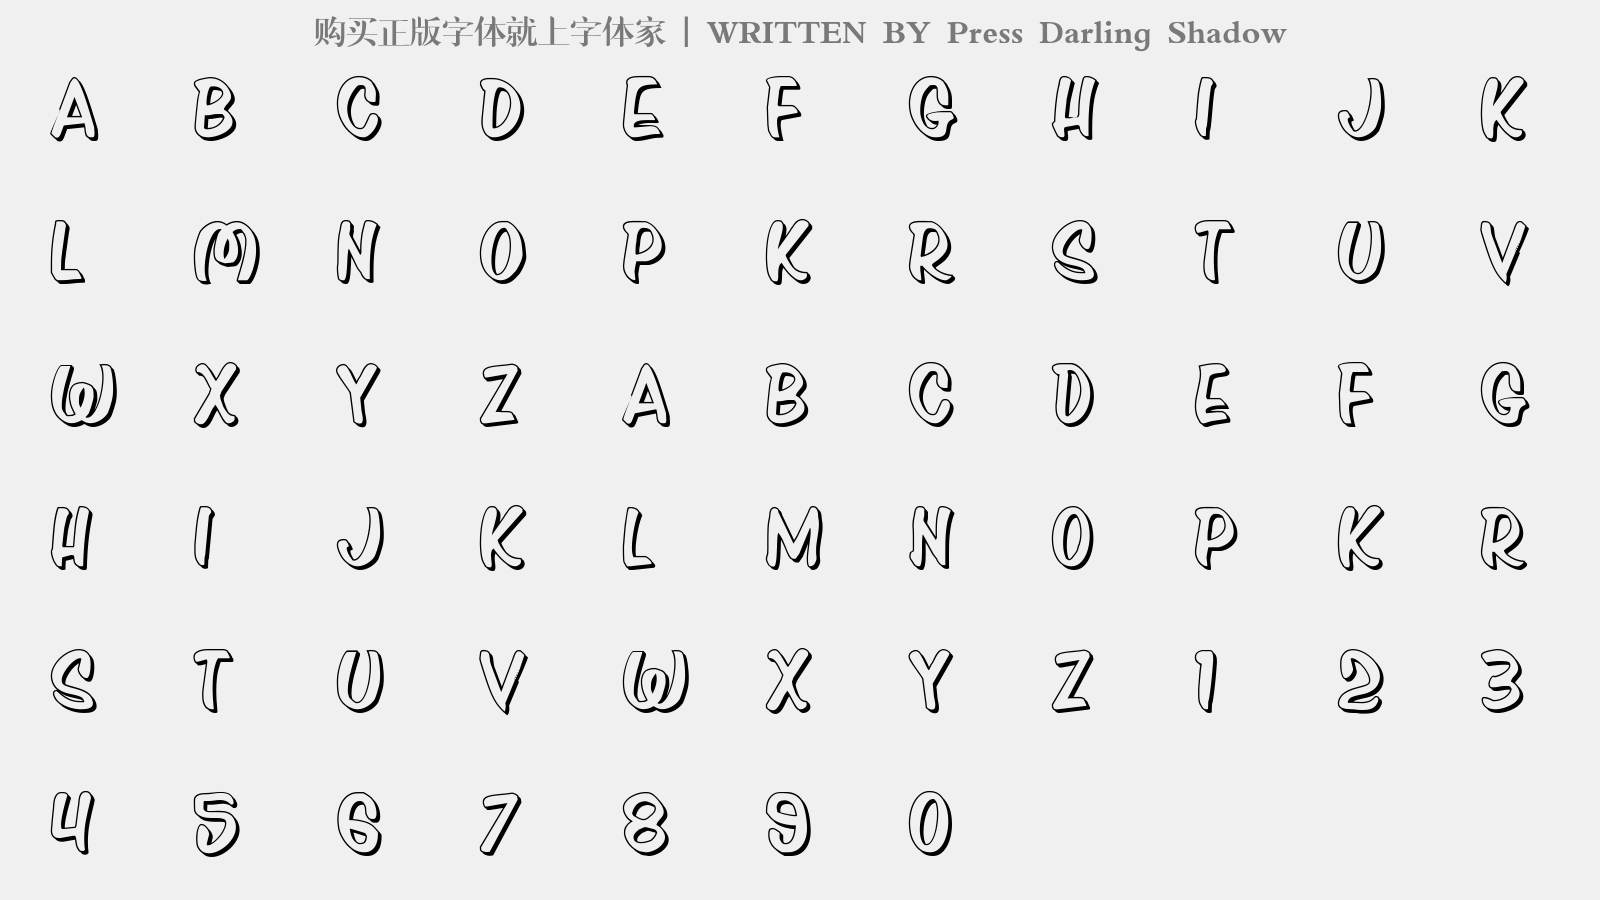 Press Darling Shadow - 大写字母/小写字母/数字